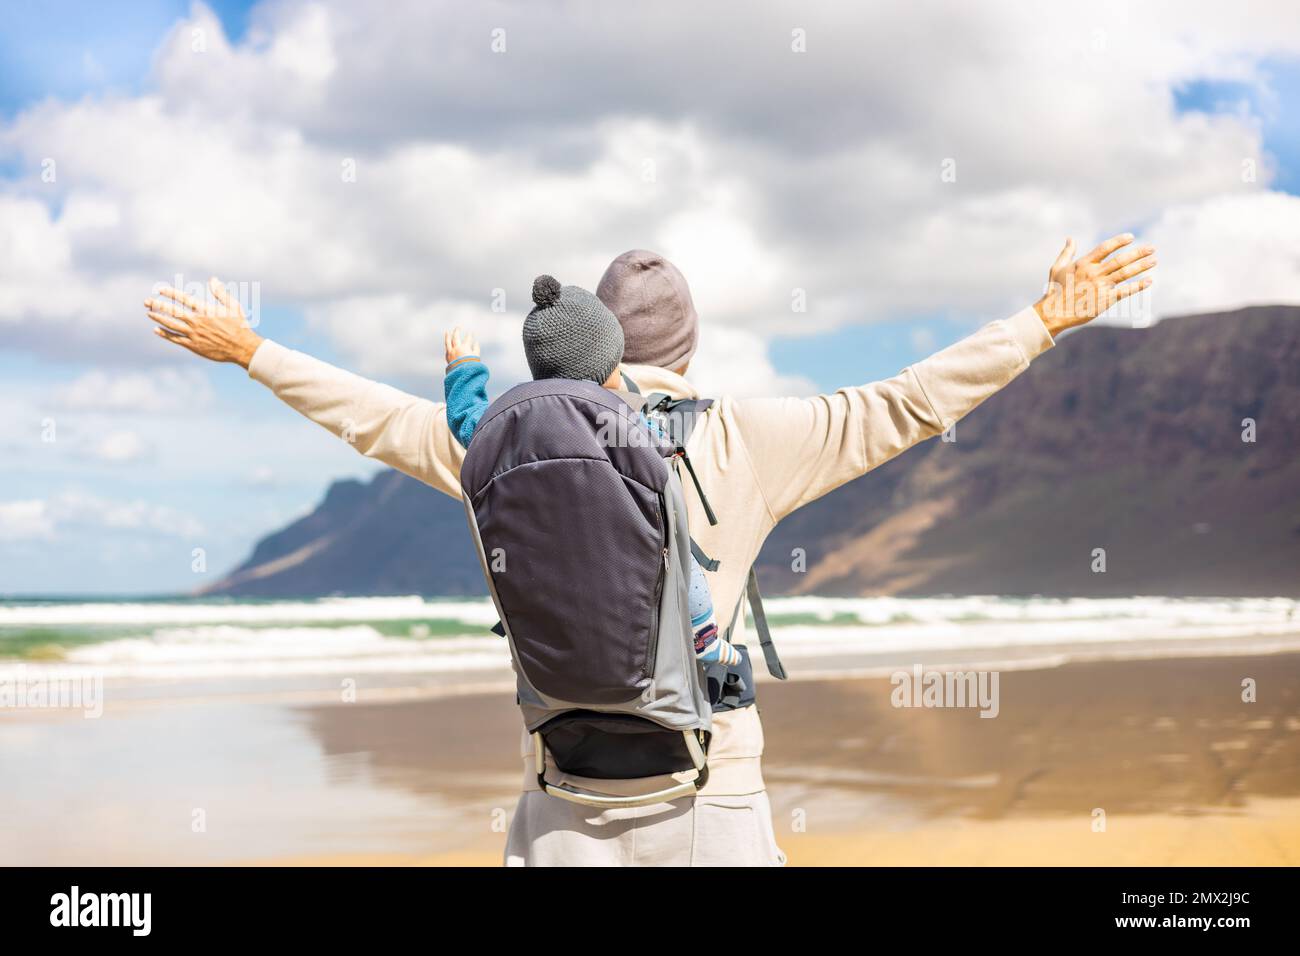 Der junge Vater erhebt sich die Hände zum Himmel und genießt dabei die reine Natur, während er seinen kleinen Sohn im Rucksack am windigen Sandstrand von Famara, Lanzarote, trägt Stockfoto